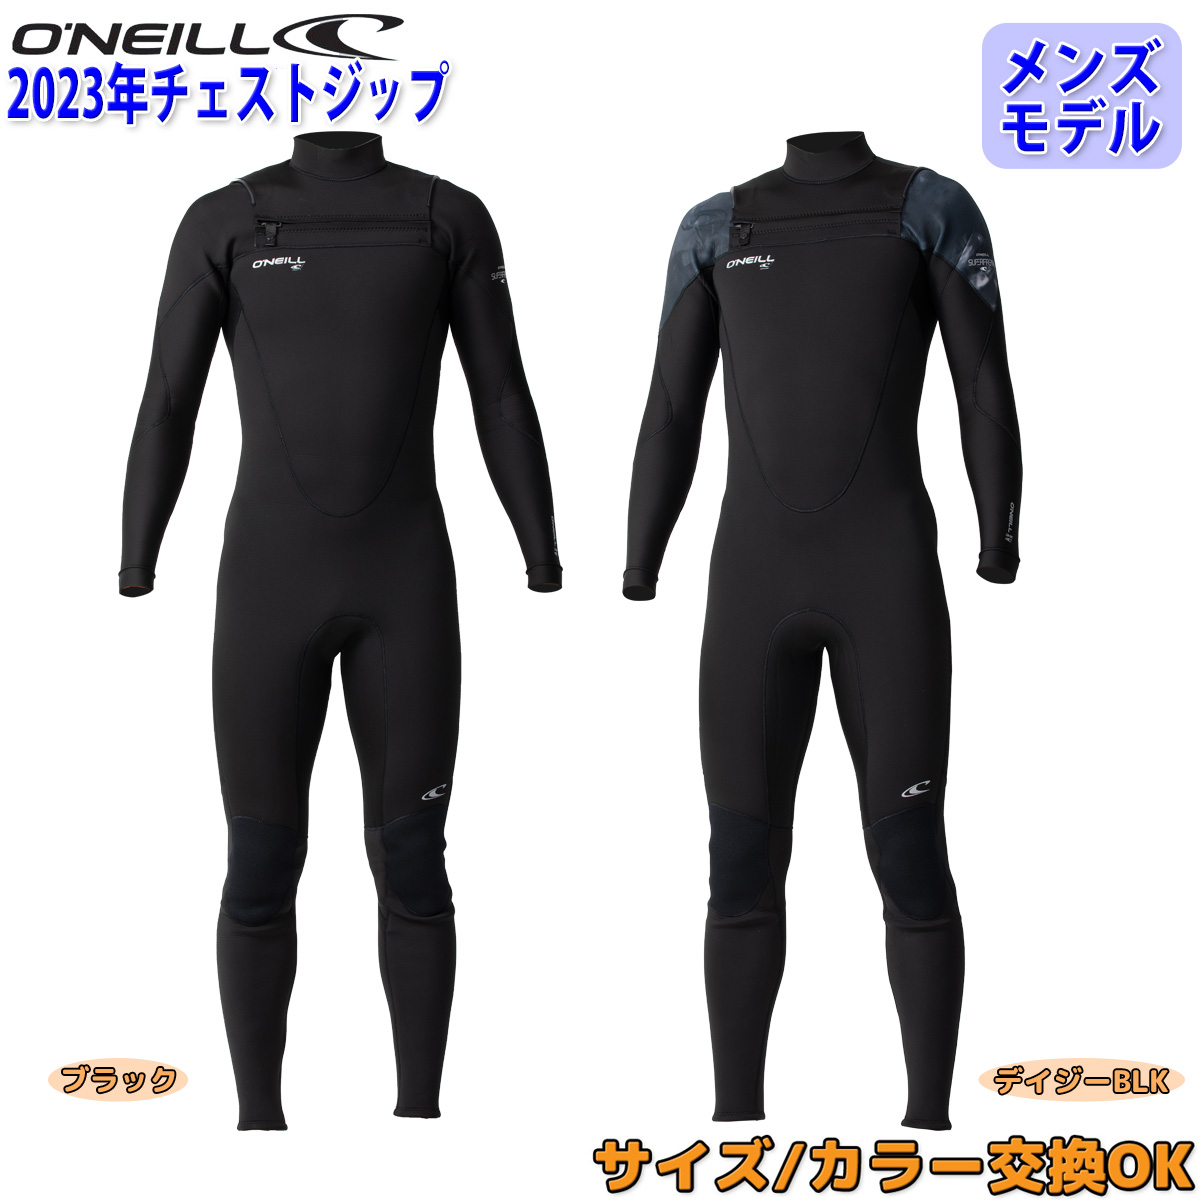 ウェットスーツ O'Neill ML 5mm - サーフィン